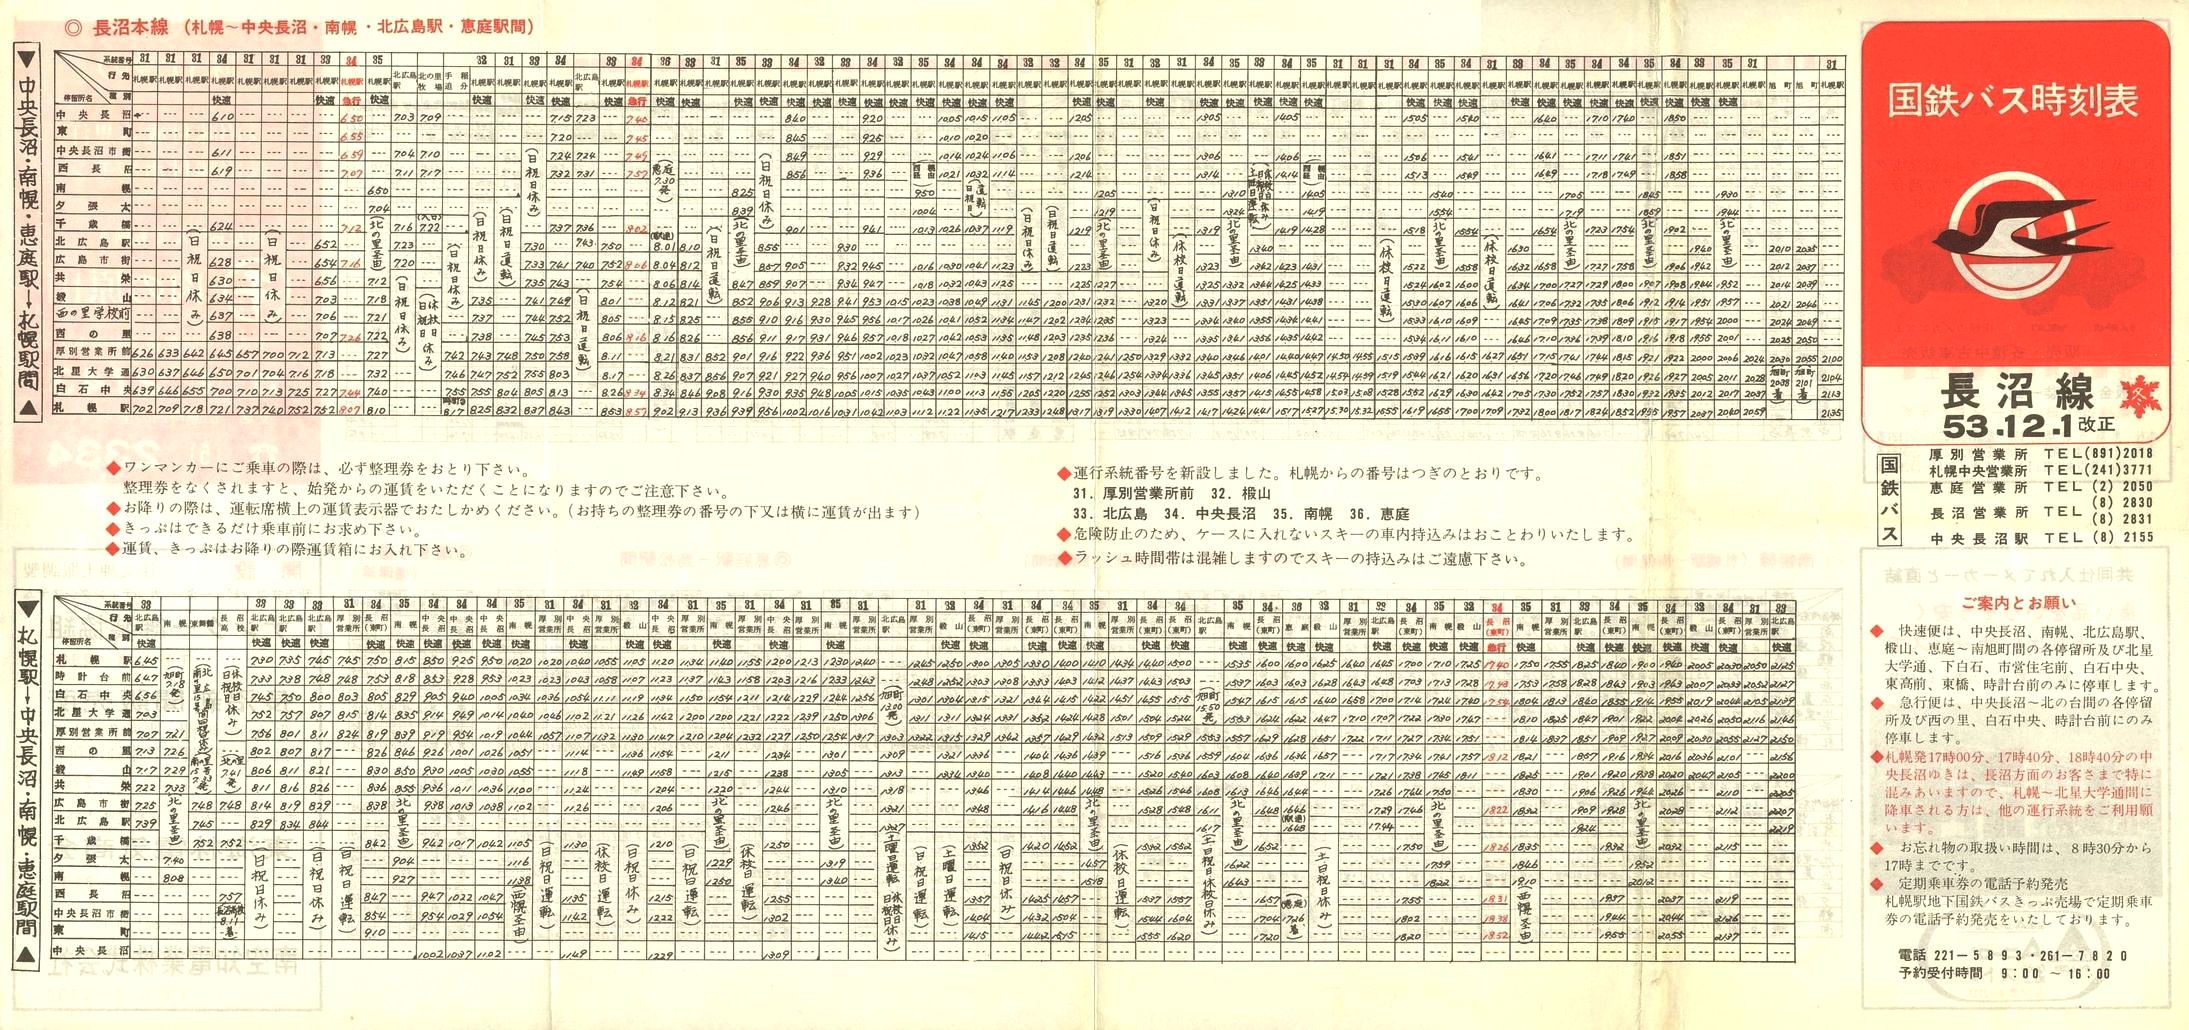 1978-12-01改正_国鉄バス_長沼線時刻表表面